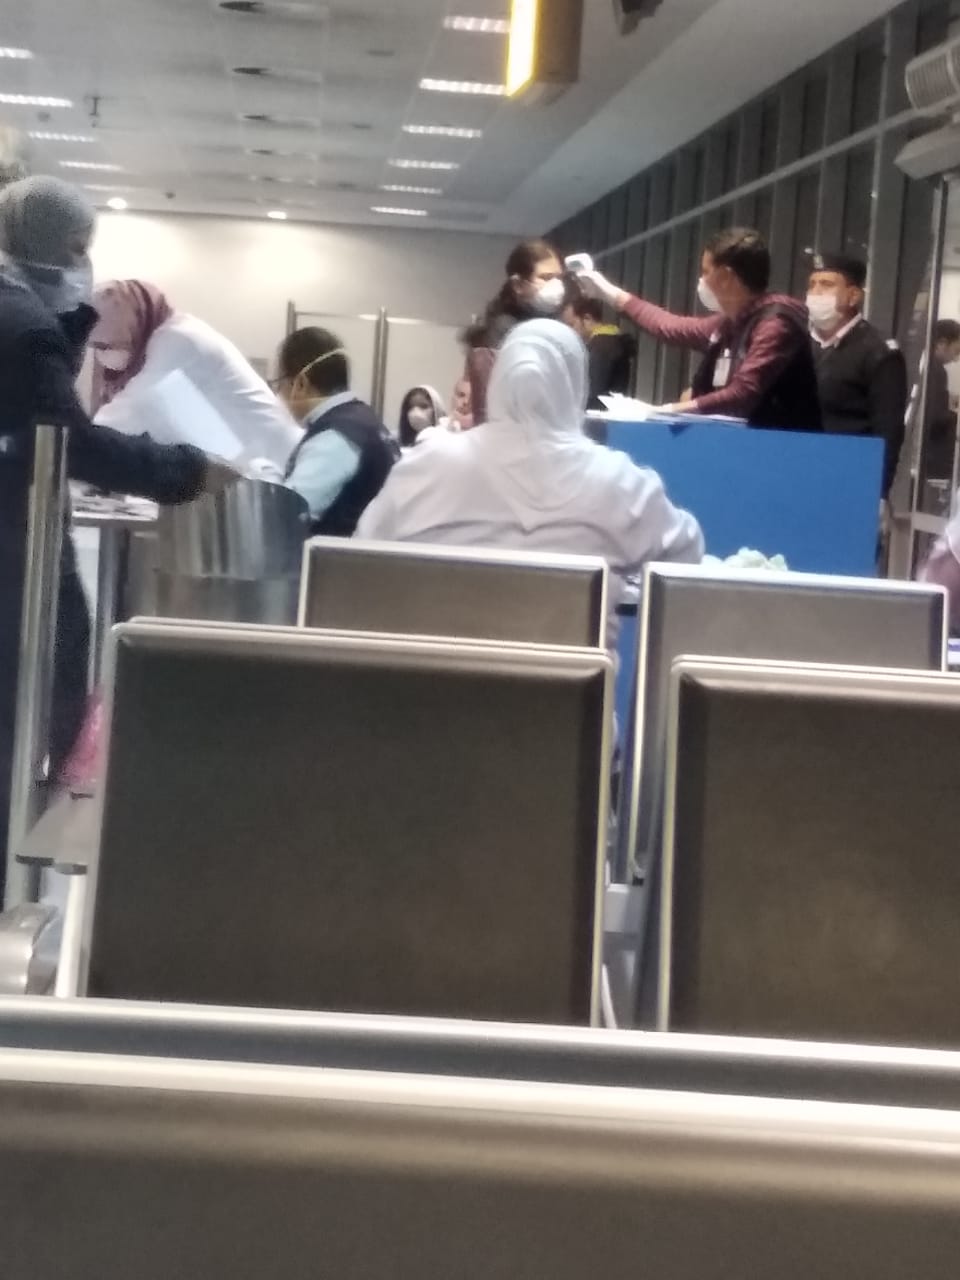 وصول المصريين العالقين فى لندن بسبب فيروس كورونا إلى مطار القاهرة (1)